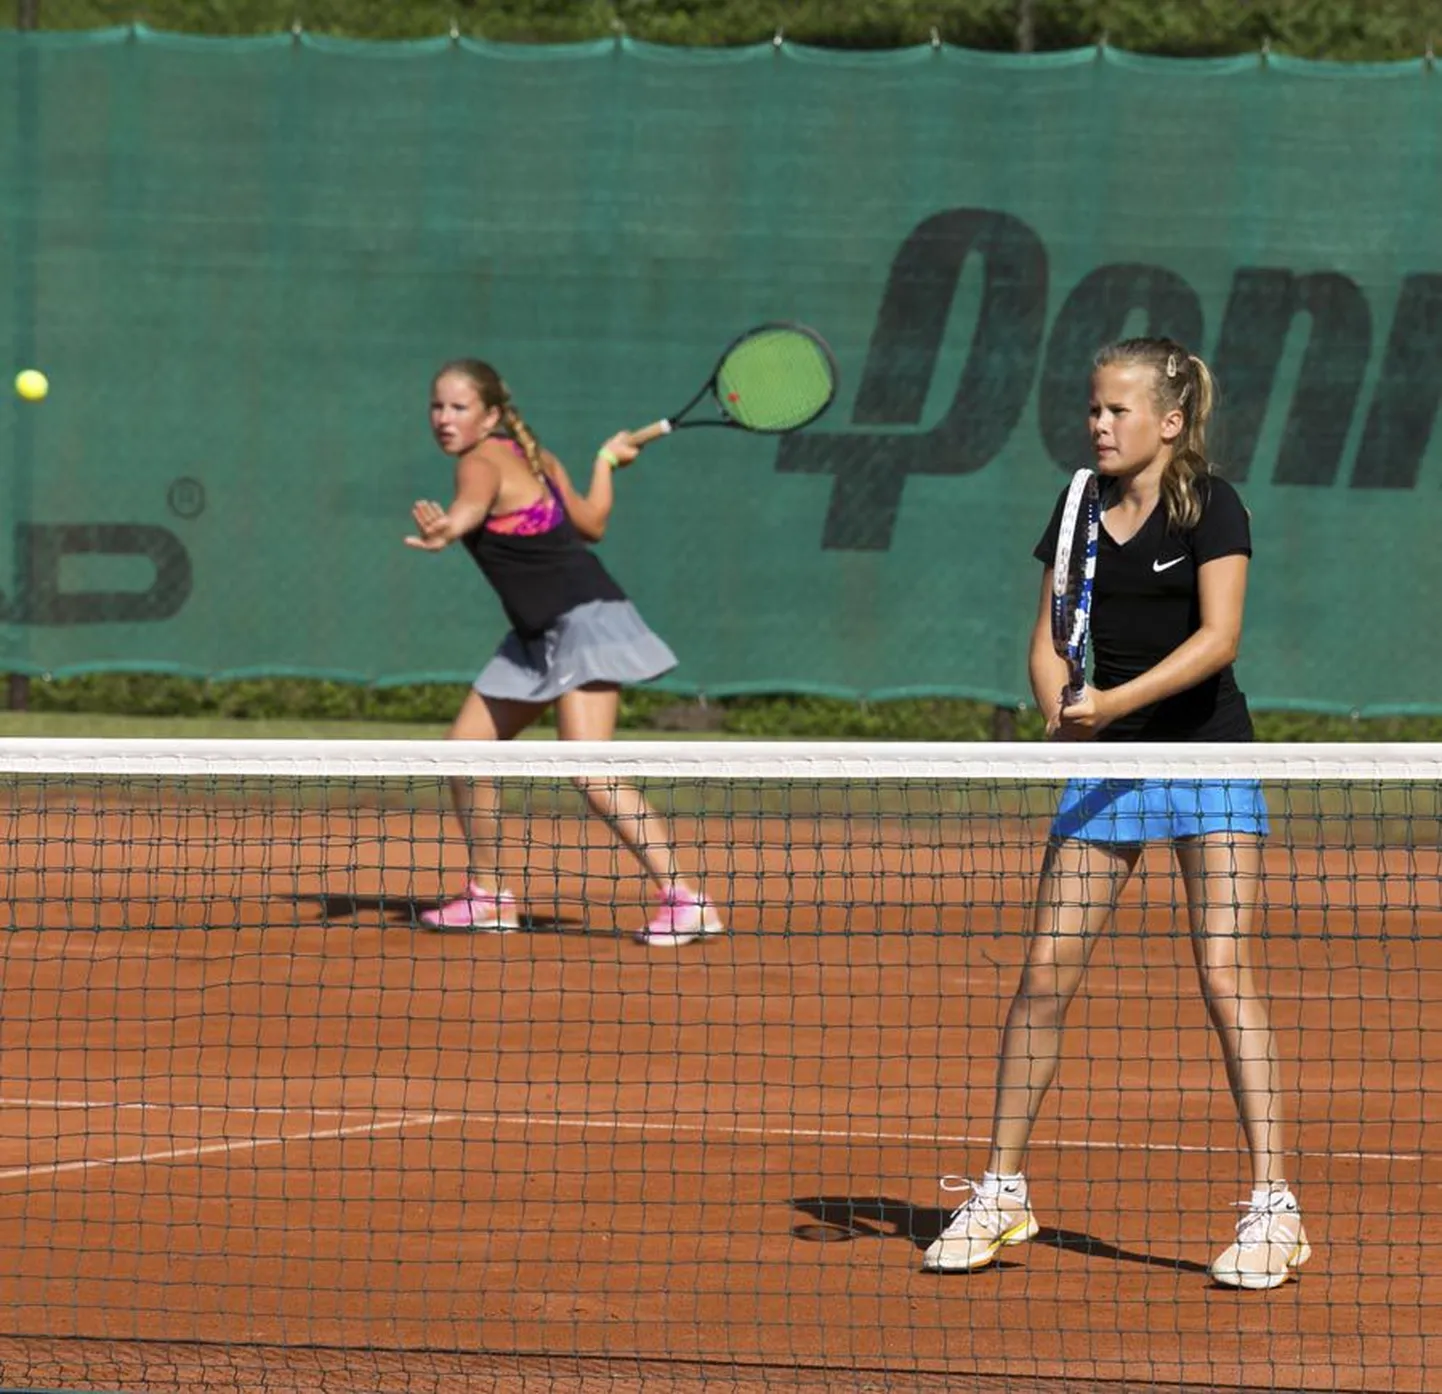 Tütarlaste paarismängus jõudis Sonja Anderson (paremal) koos Pärnumaalt pärit Triinu Ruuliga finaali.